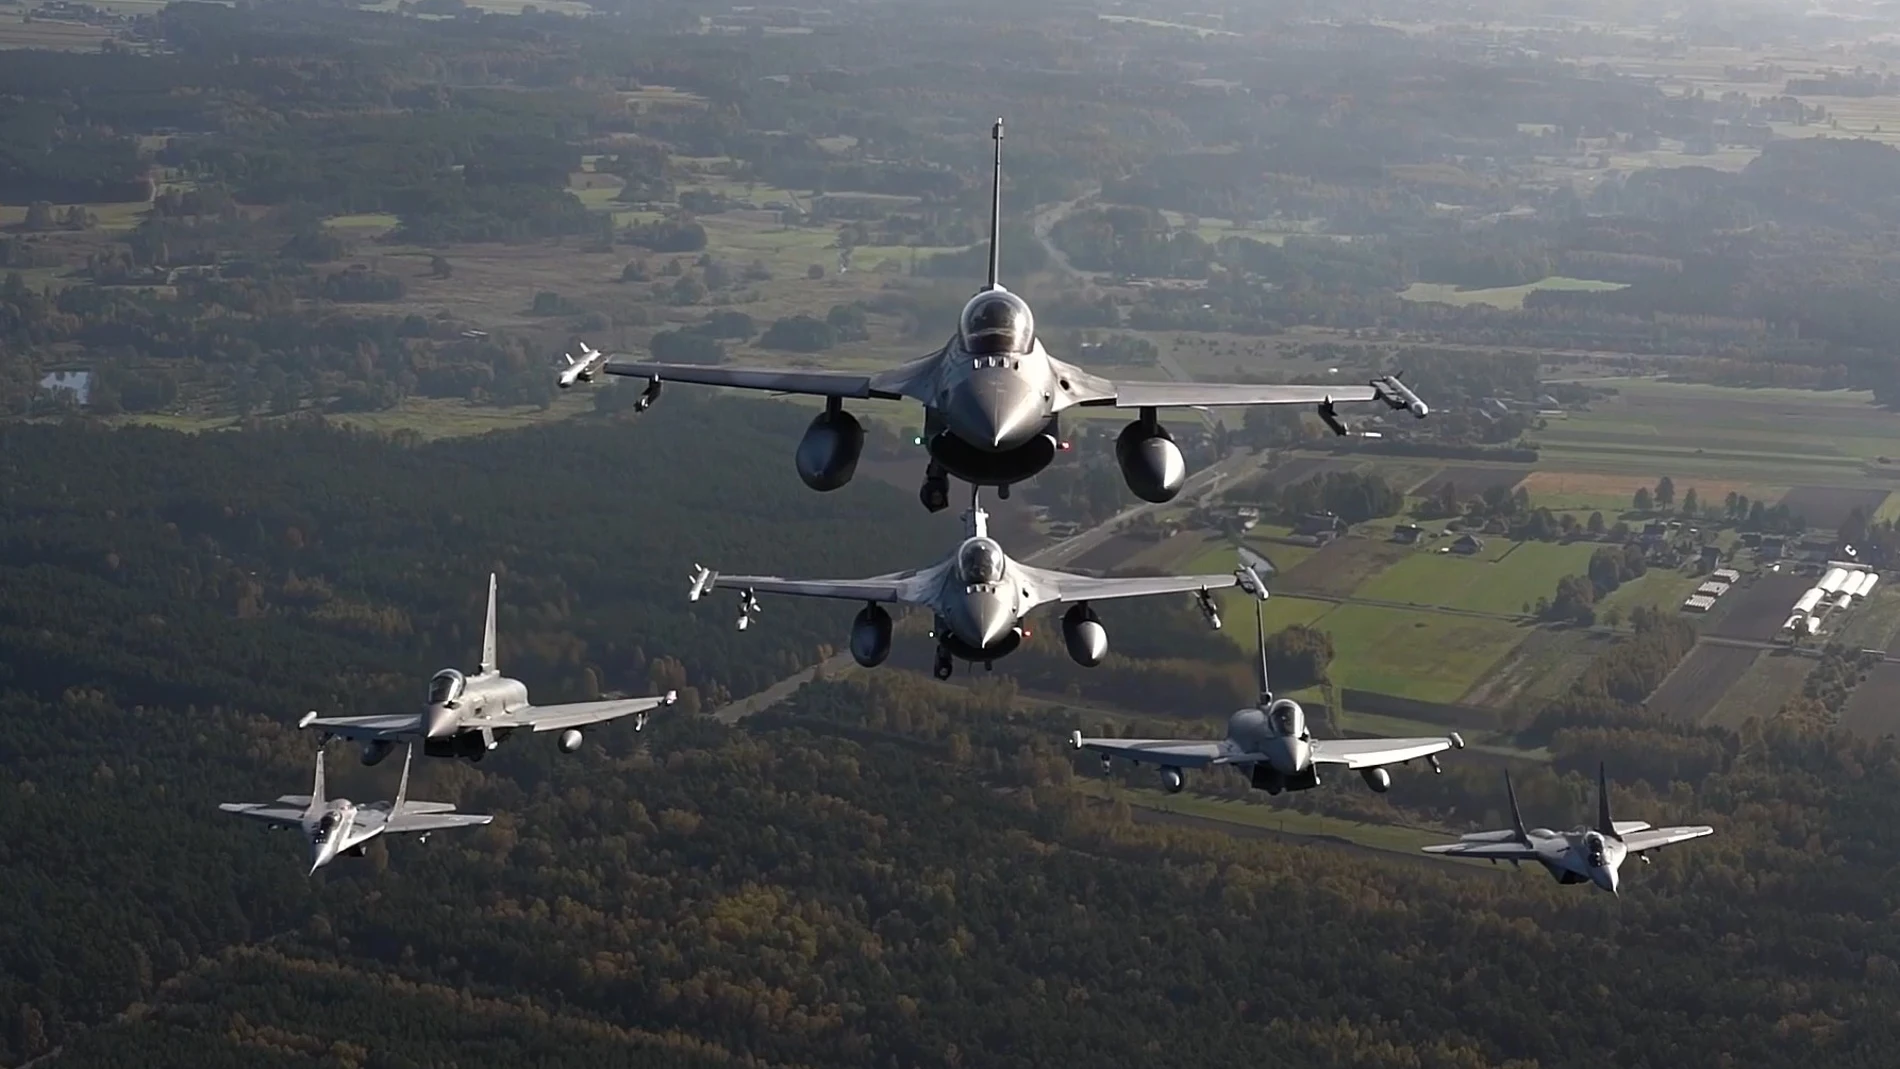 October 12, 2022, ask Air Base, Poland: VIDEO AVAILABLE: CONTACT INFO@COVERMG.COM TO RECEIVE**..Fighter jets from Italy, Poland and the United States took to the skies over NATO's eastern flank as part of NATO's Air Shielding mission. The line-up of aircraft included Italian Eurofighters, Polish F-16s and Polish MiG-29s and United States F-22s. The planned one-day series of aerial manoeuvres were conducted from Åask Air Base in Poland on 12 October 2022...NATO's Air Shielding mission is an increased air and missile defence posture along the Alliance's eastern flank, implemented in the wake of Russia's brutal invasion of Ukraine. Allies have deployed more fighter jets and ground-based air and missile defence systems to protect Allies along the eastern flank against possible air and missile threats. This is purely defensive, and a key component of NATO's enhanced deterrence and defence posture. NATO's Air Shielding involves deployments ranging from a few weeks to several months at air bases and key locations in the eastern part of the Alliance...Footage includes aerial manoeuvres of Italian Eurofighters, Polish F-16s and MiG-29s, and US F-22s...The aerial manoeuvres come amid increased tensions on NATO's Eastern flank due to Russia's war in Ukraine and threats from Kremlin leaders to members of the NATO Alliance...Where: Åask Air Base, Poland.When: 12 Oct 2022.Credit: US Air Force/Cover Images..**EDITORIAL USE ONLY. MATERIALS ONLY TO BE USED IN CONJUNCTION WITH EDITORIAL STORY. THE USE OF THESE MATERIALS FOR ADVERTISING, MARKETING OR ANY OTHER COMMERCIAL PURPOSE IS STRICTLY PROHIBITED. MATERIAL COPYRIGHT REMAINS WITH STATED SUPPLIER. (Foto de ARCHIVO) 12/10/2022